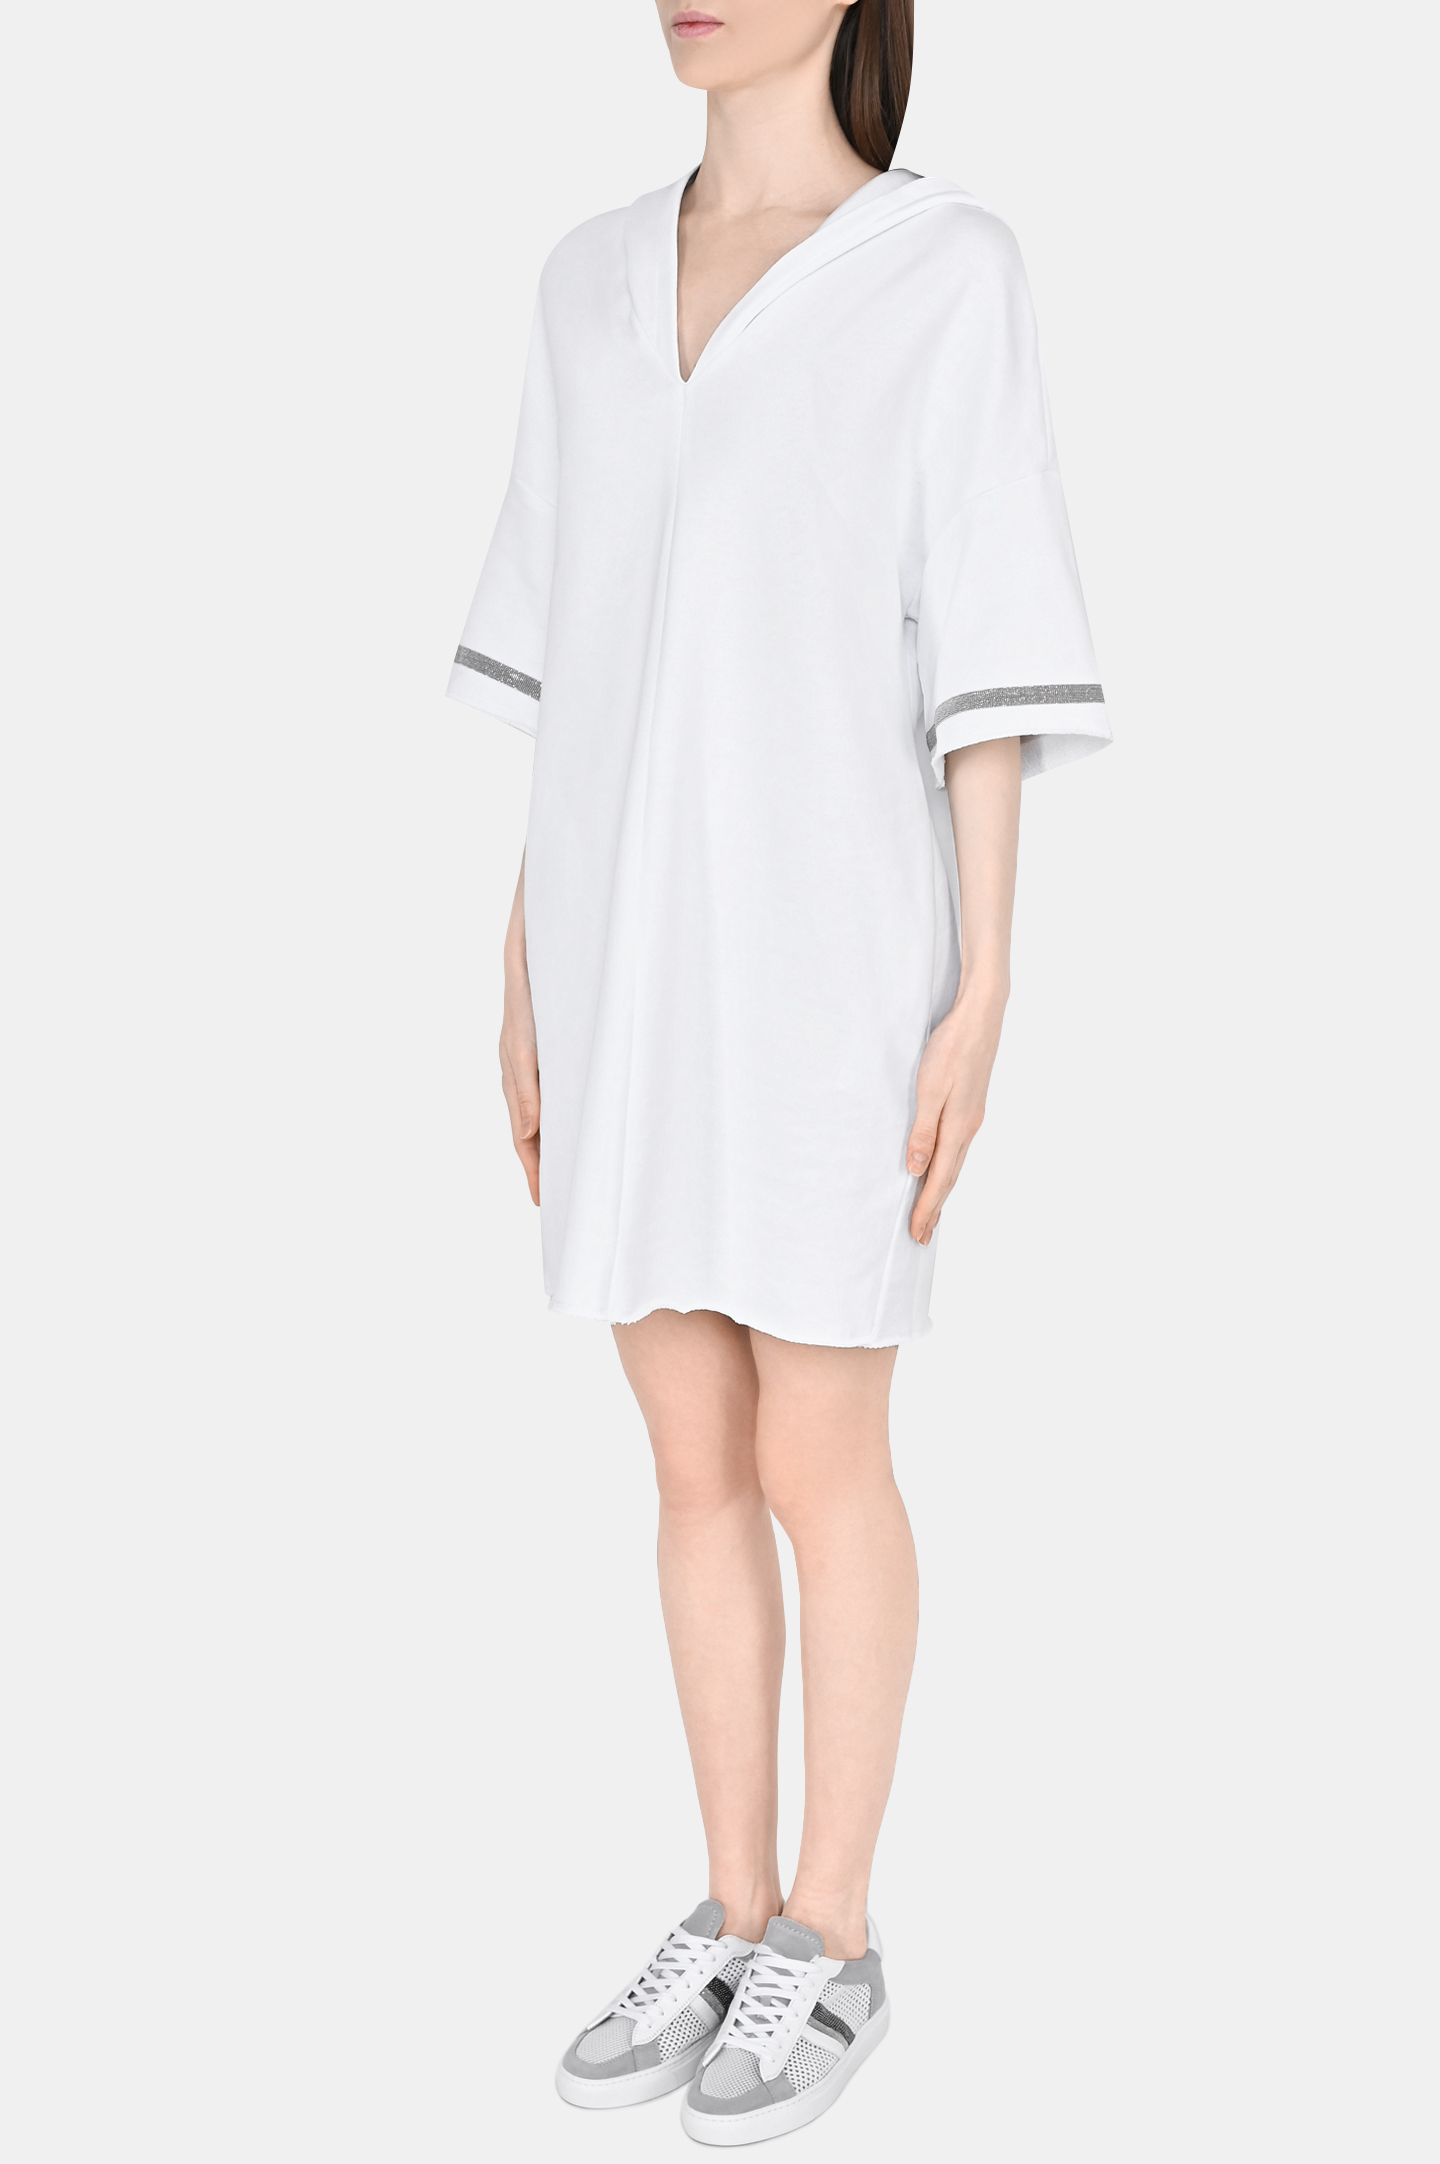 Платье FABIANA FILIPPI ABD273W179H359, цвет: Белый, Женский